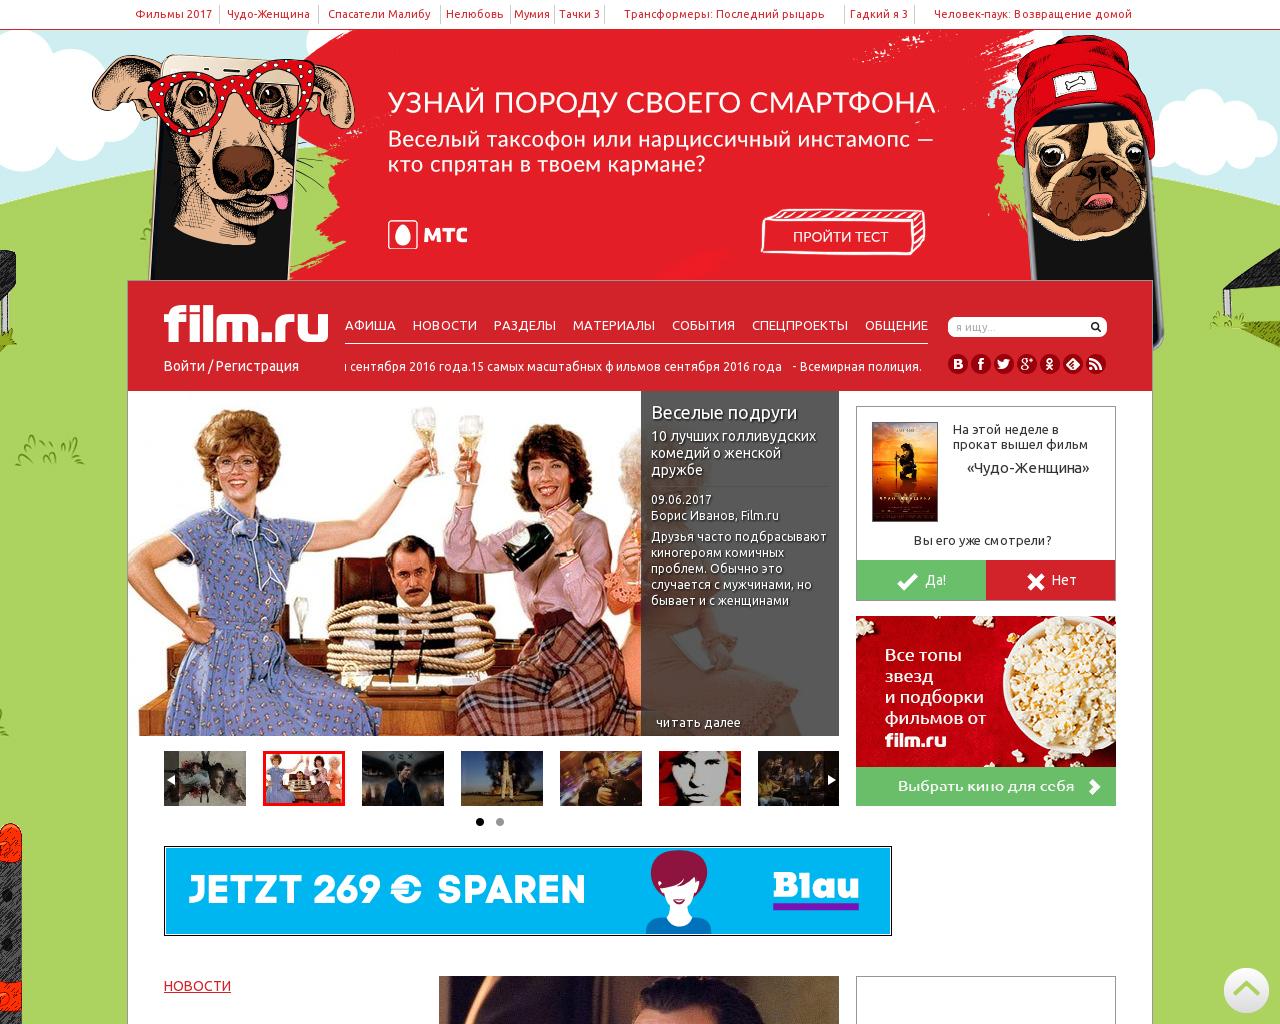 Изображение сайта grosy.ru в разрешении 1280x1024